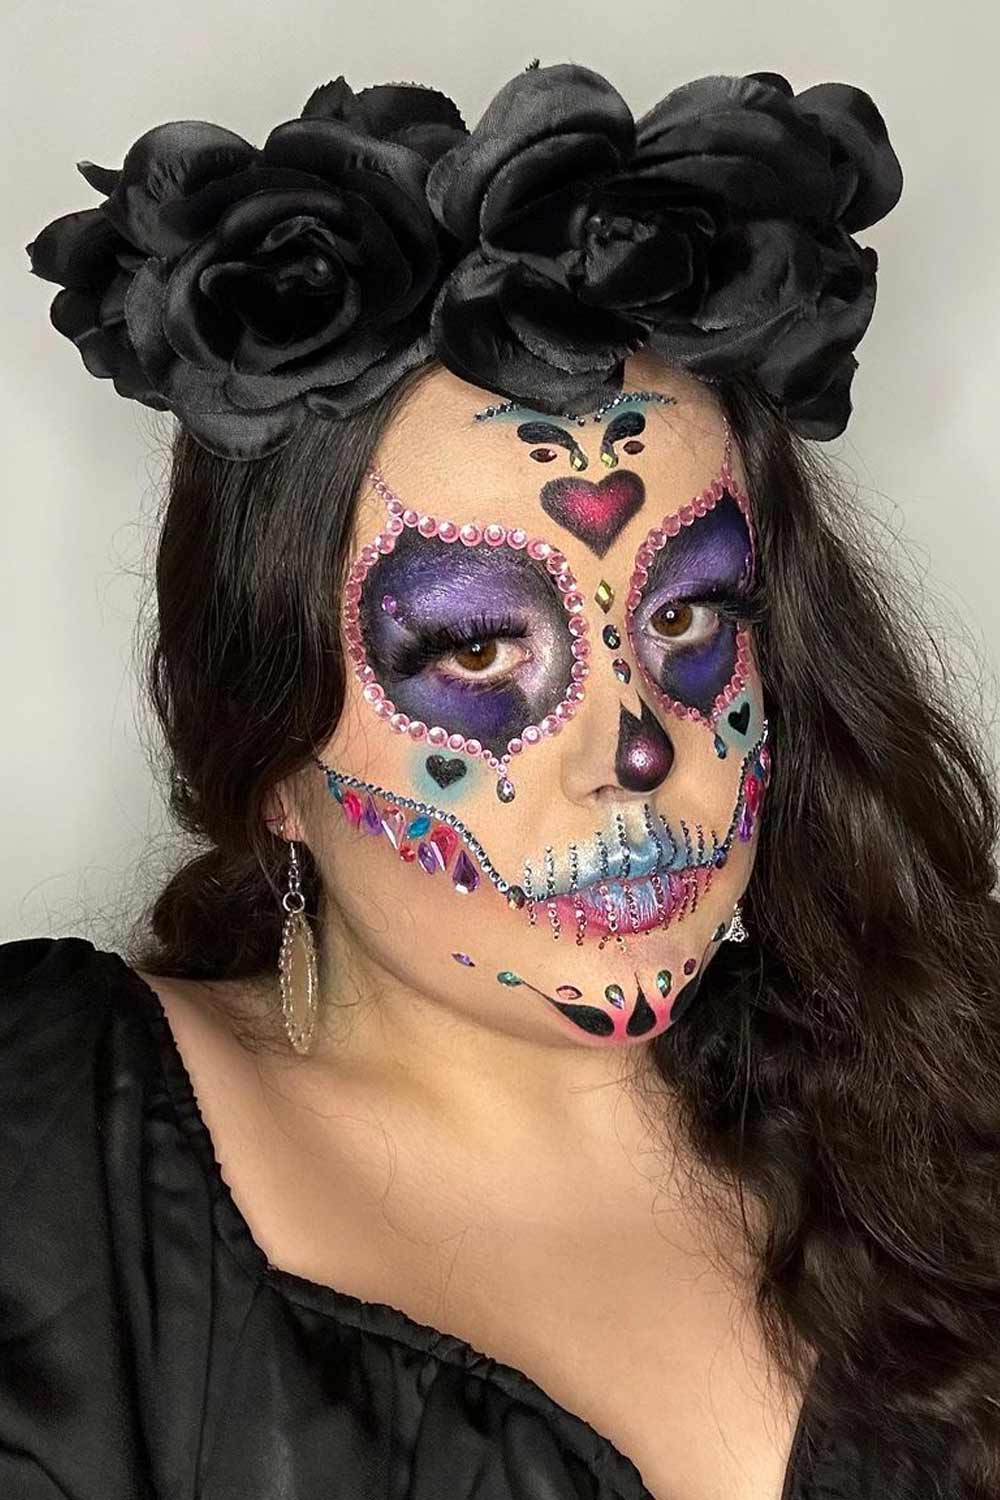 Sugar Skull Makeup